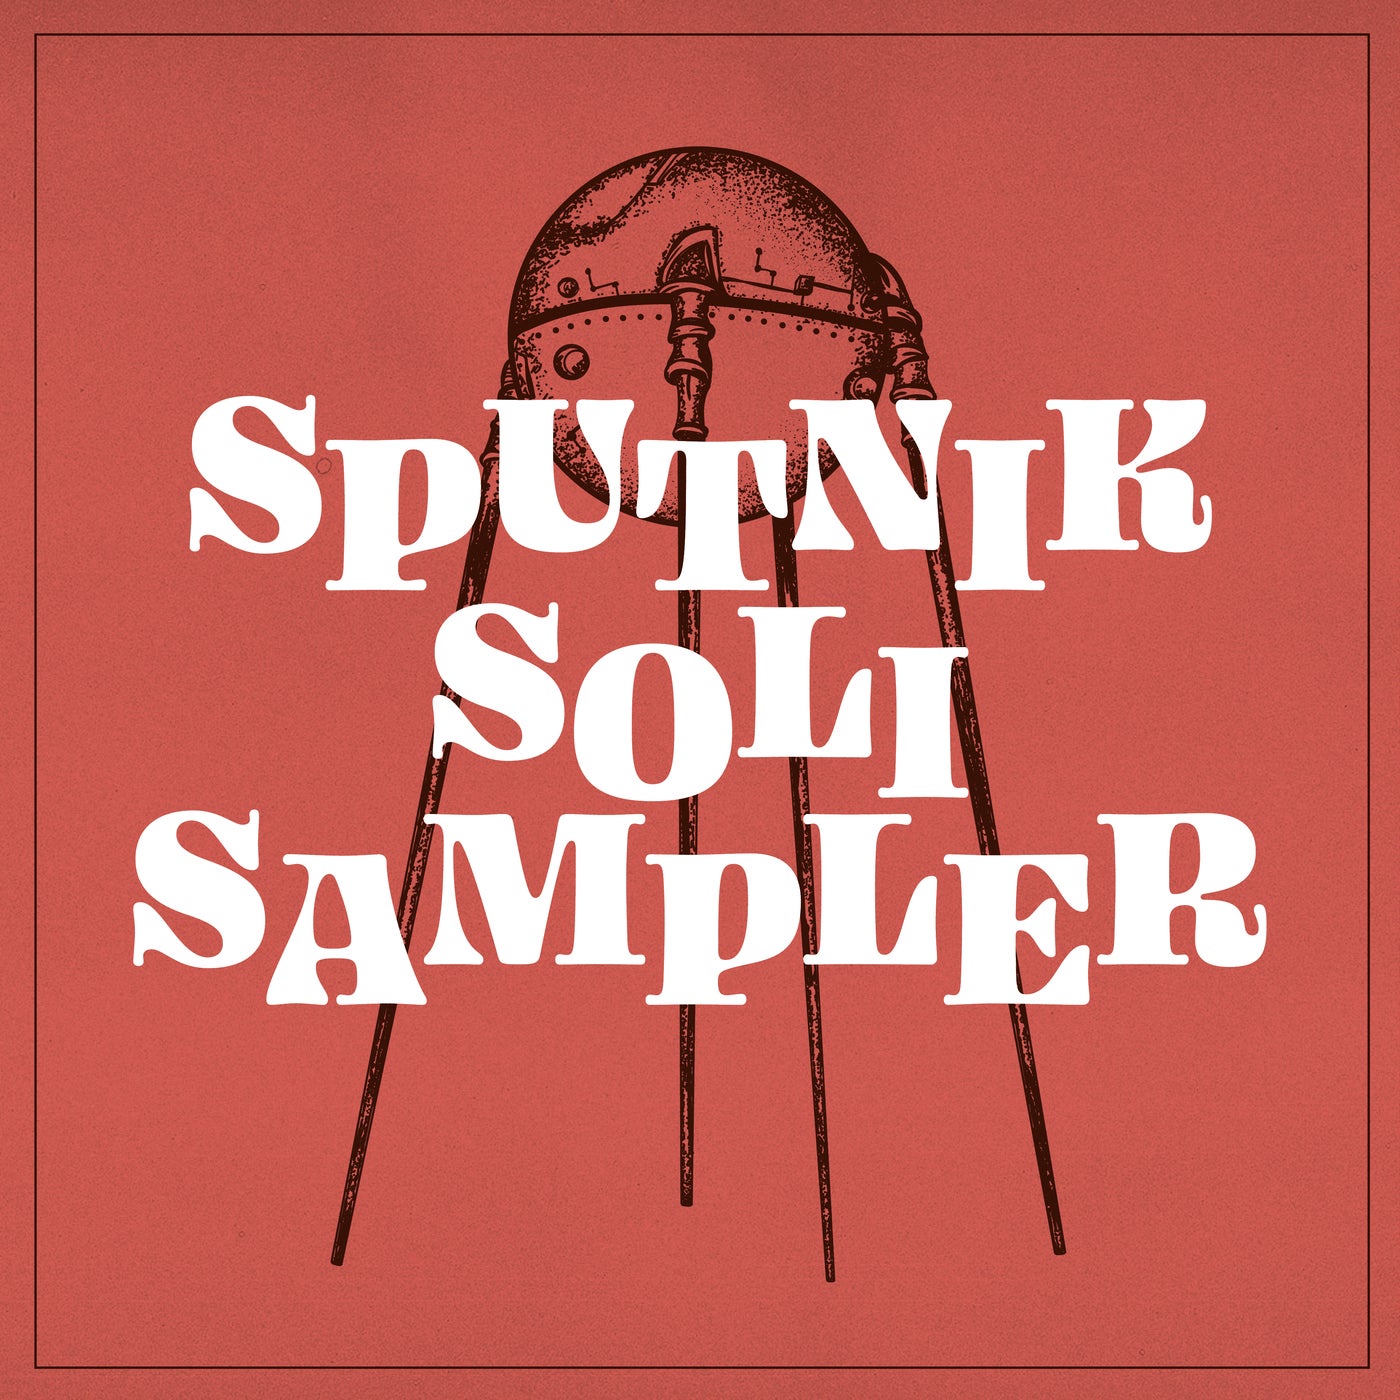 Sputnik Soli Sampler